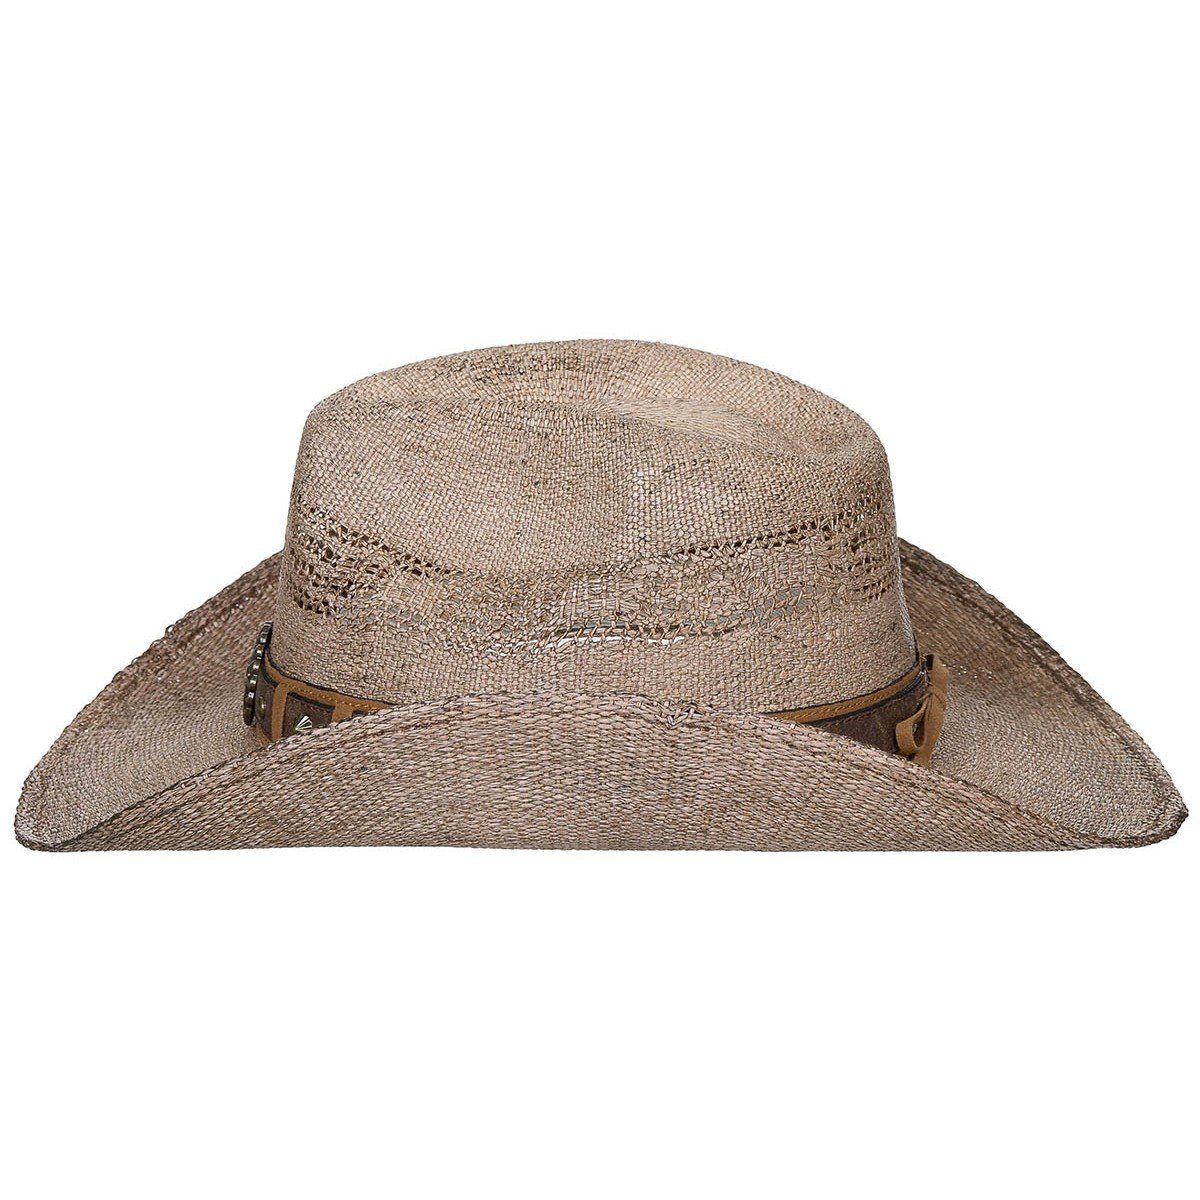 FoxOutdoor Strohhut Strohhut, "Colorado", Western braun Style mit Hutband, mit Hutband